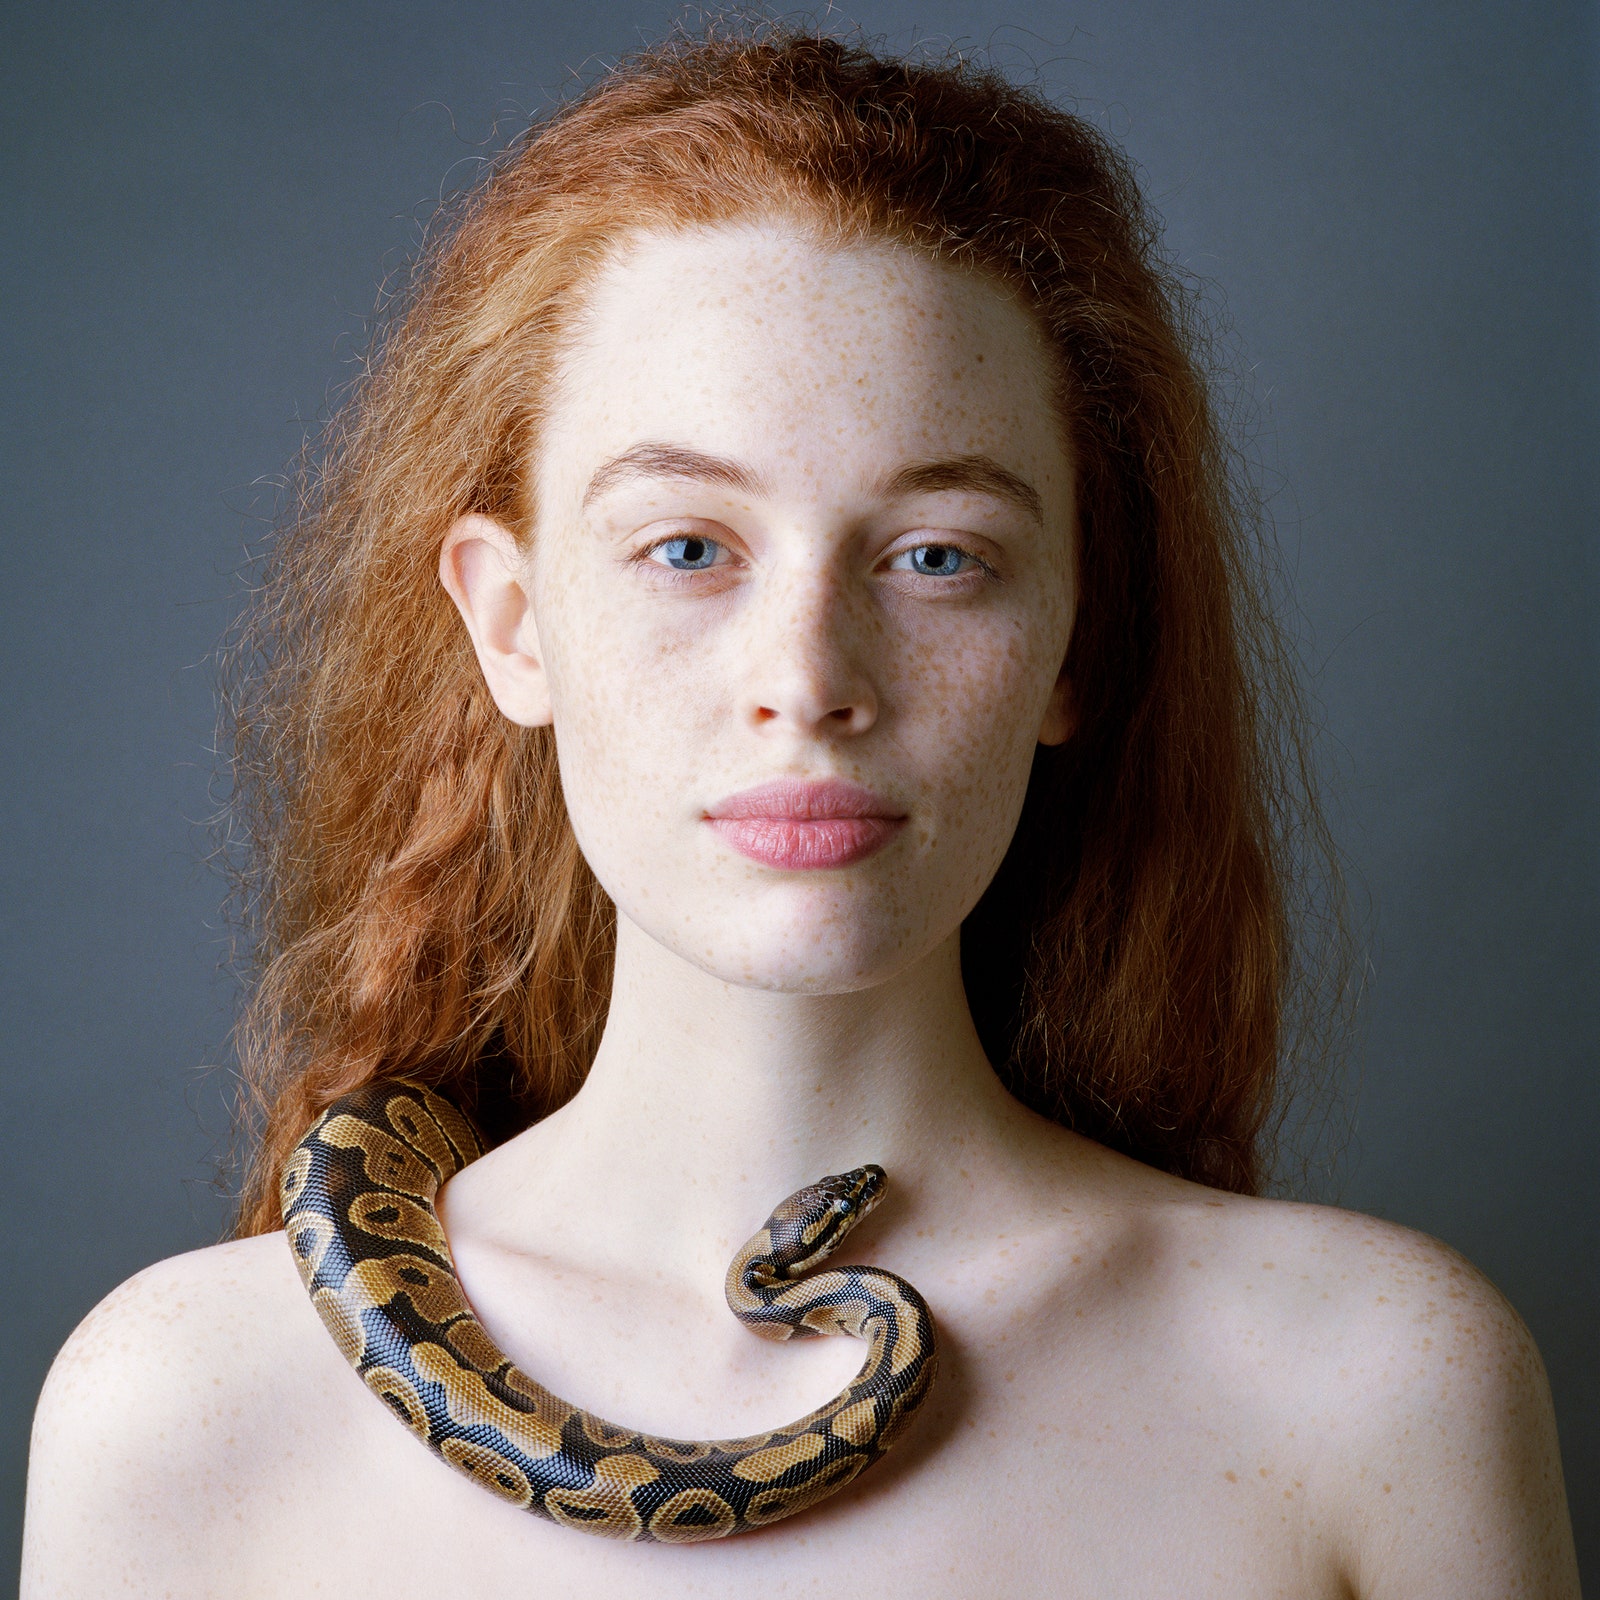 Laura au serpent 3. ЖанБатист Уин. 2012.